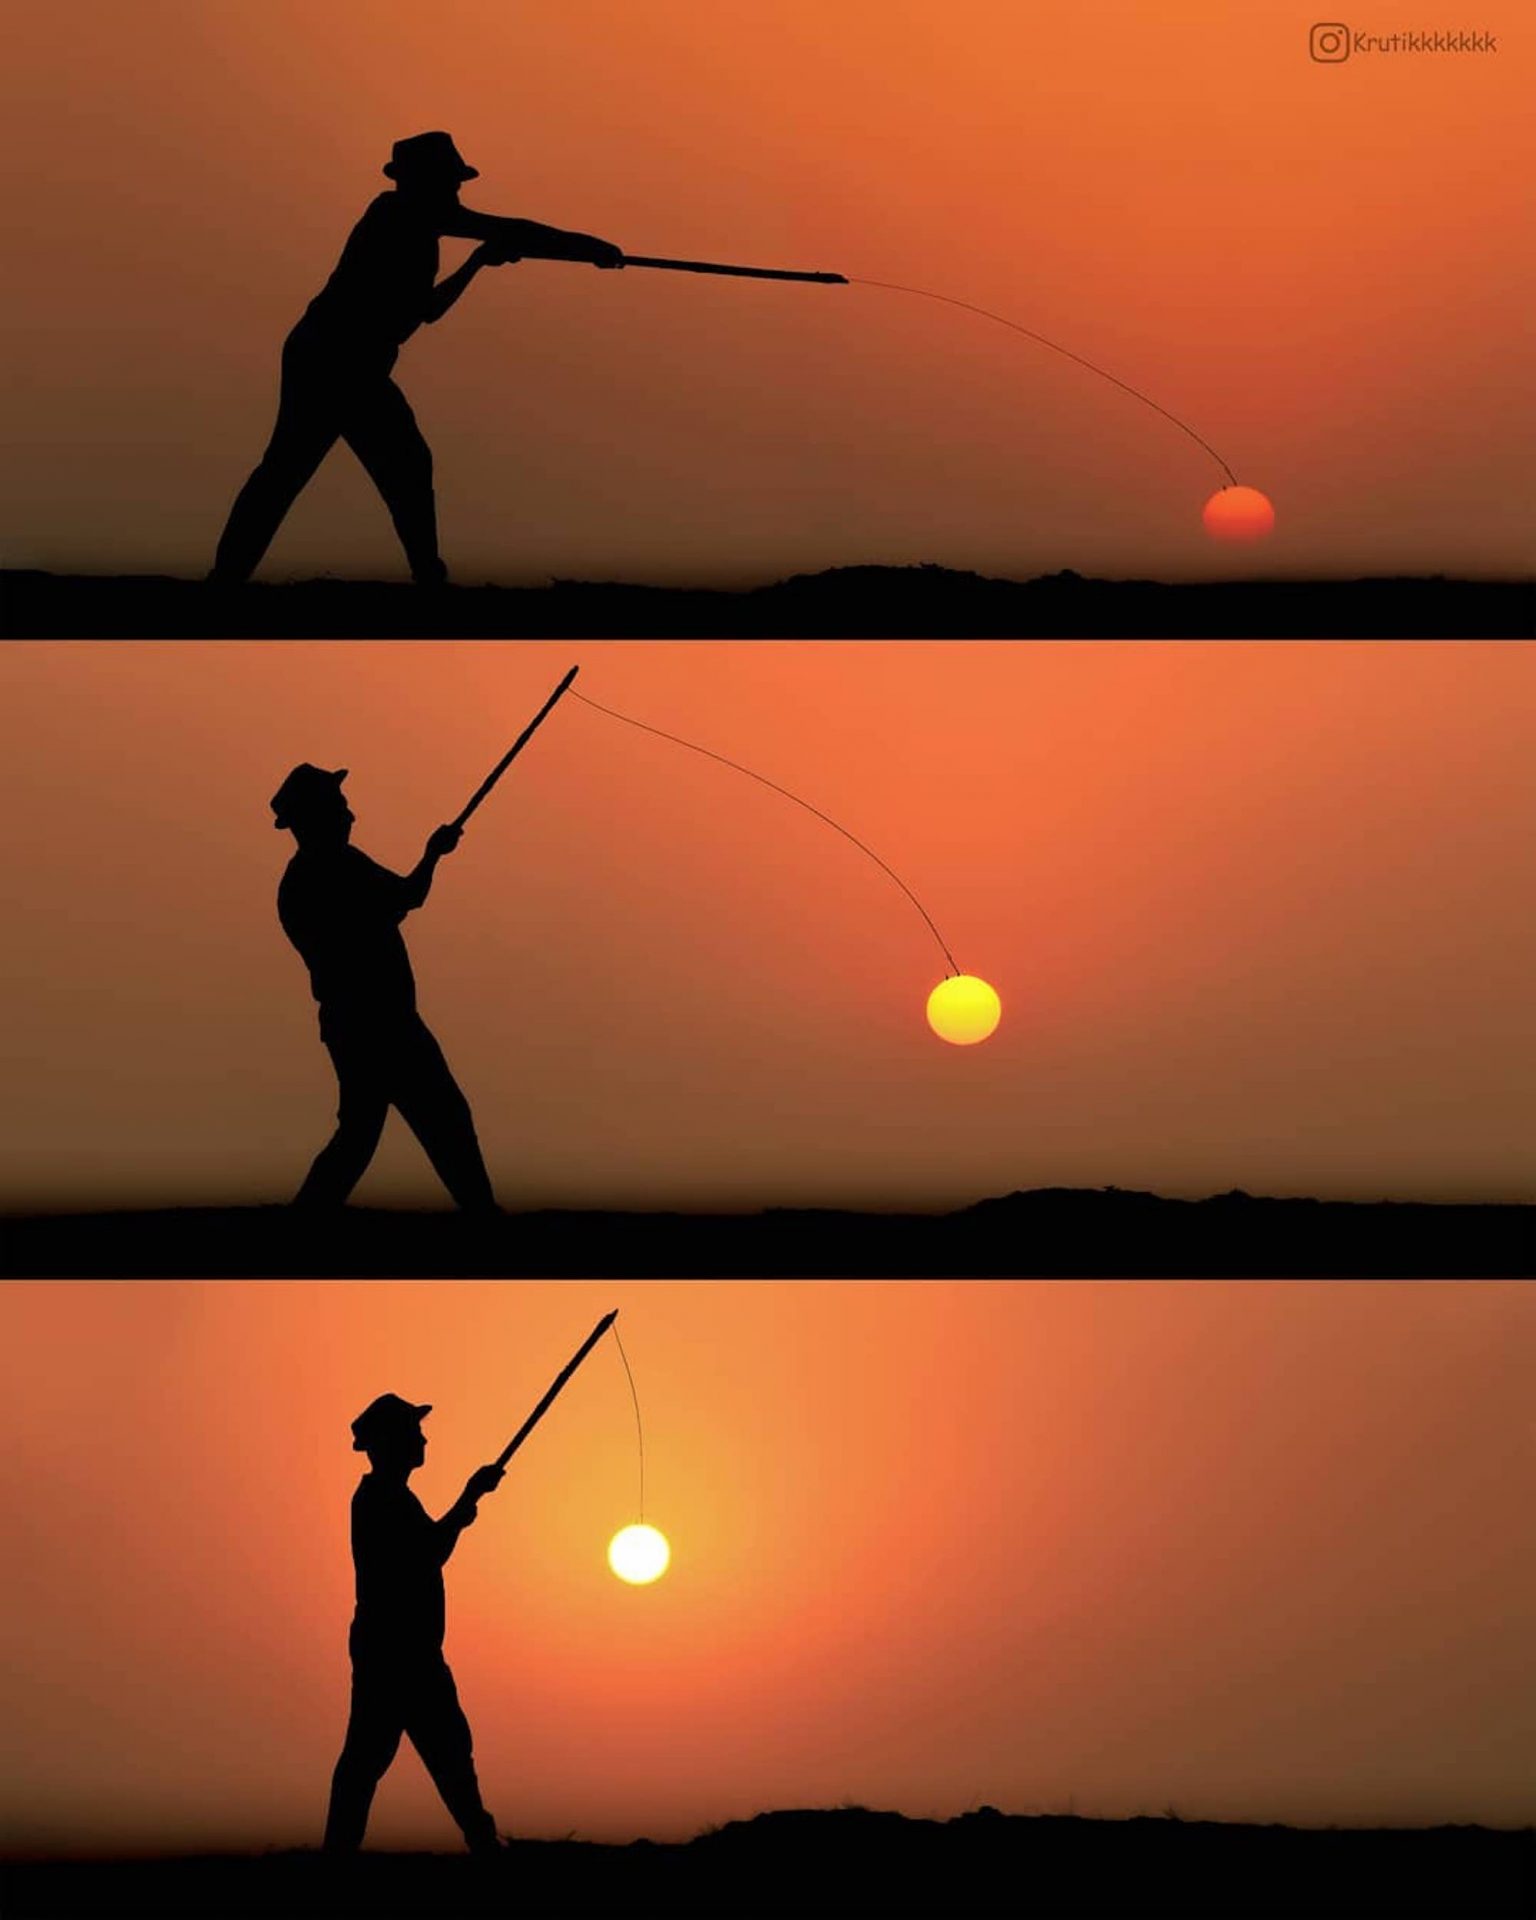 Le photographe Krutik Thakur joue avec le soleil pour créer des mises en scène originale